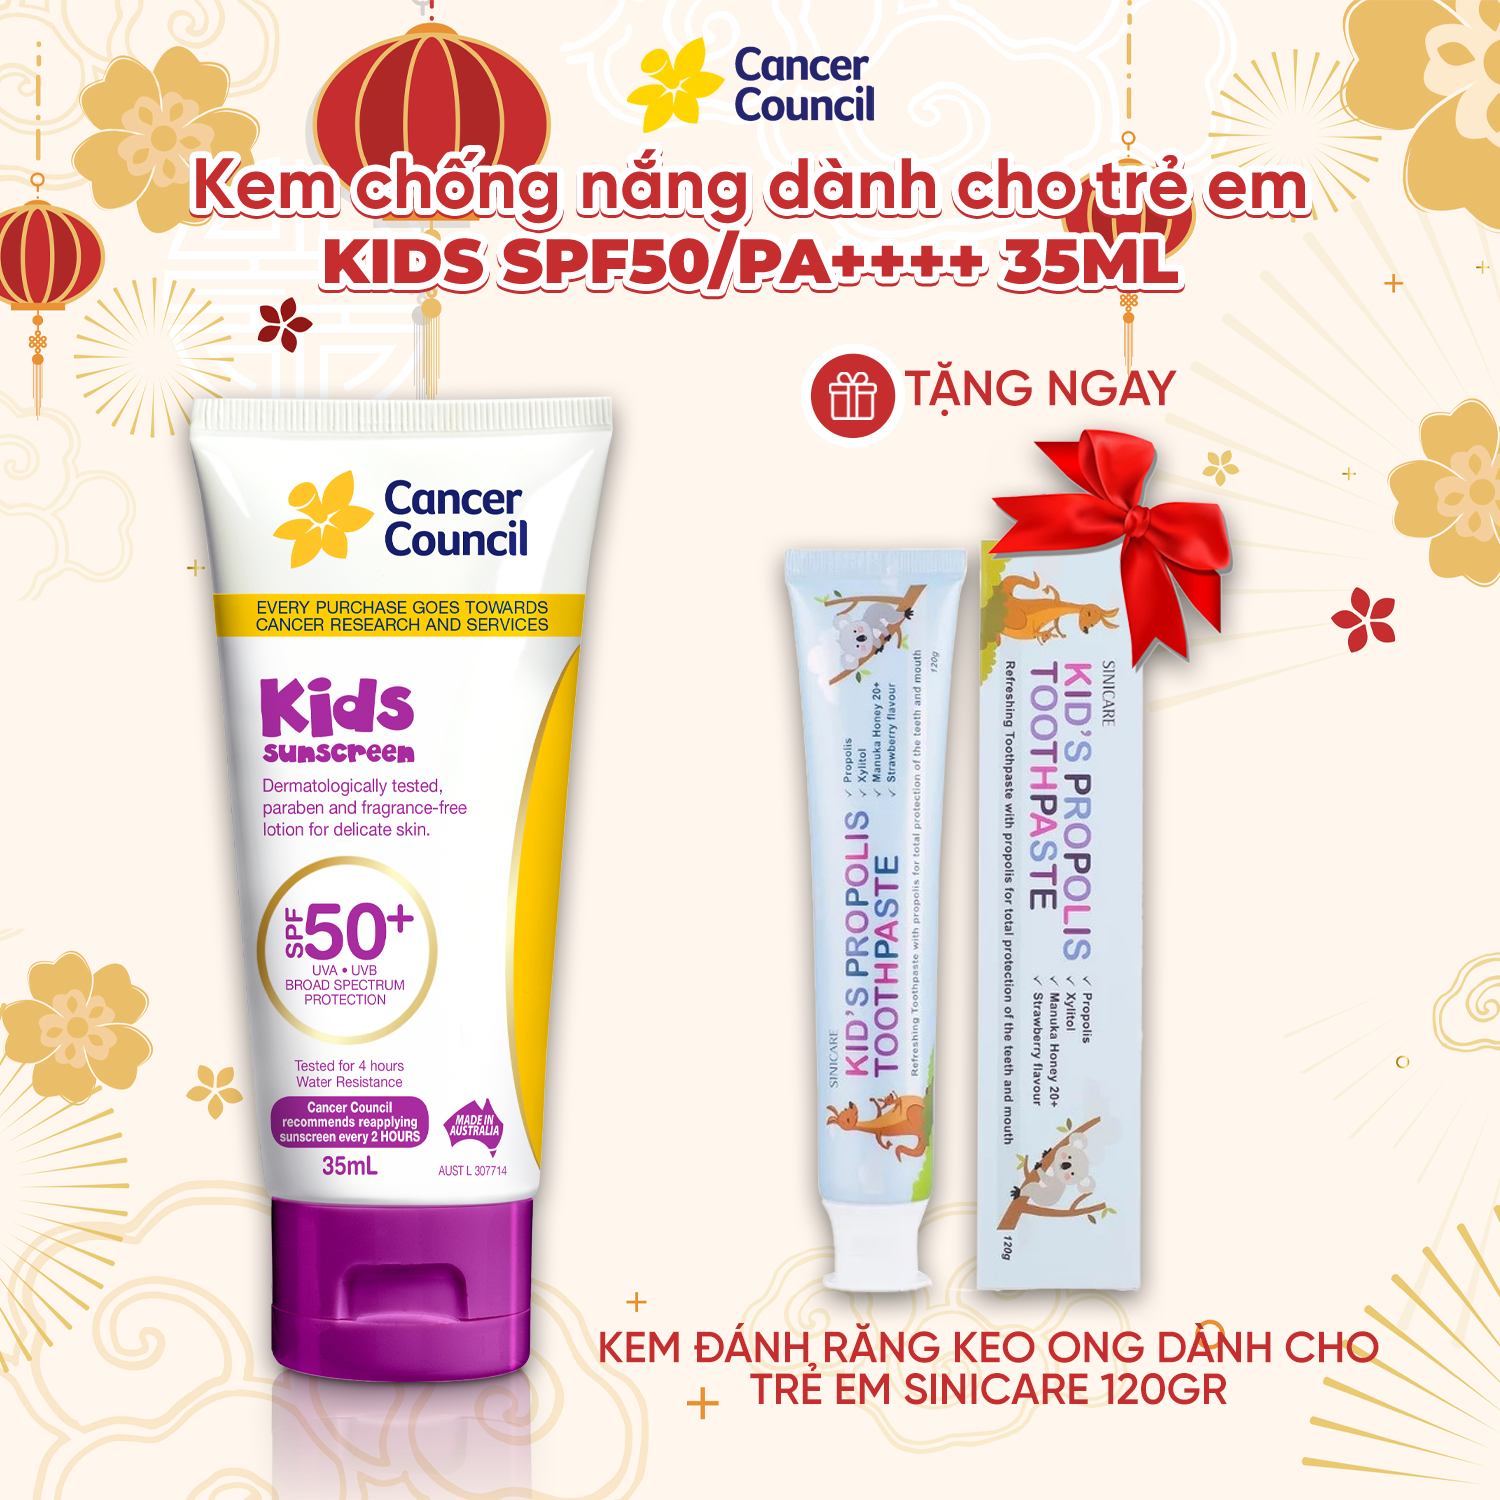 Kem chống nắng trẻ em Cancer Council Kids SPF 50+ PA ++++ 35ml